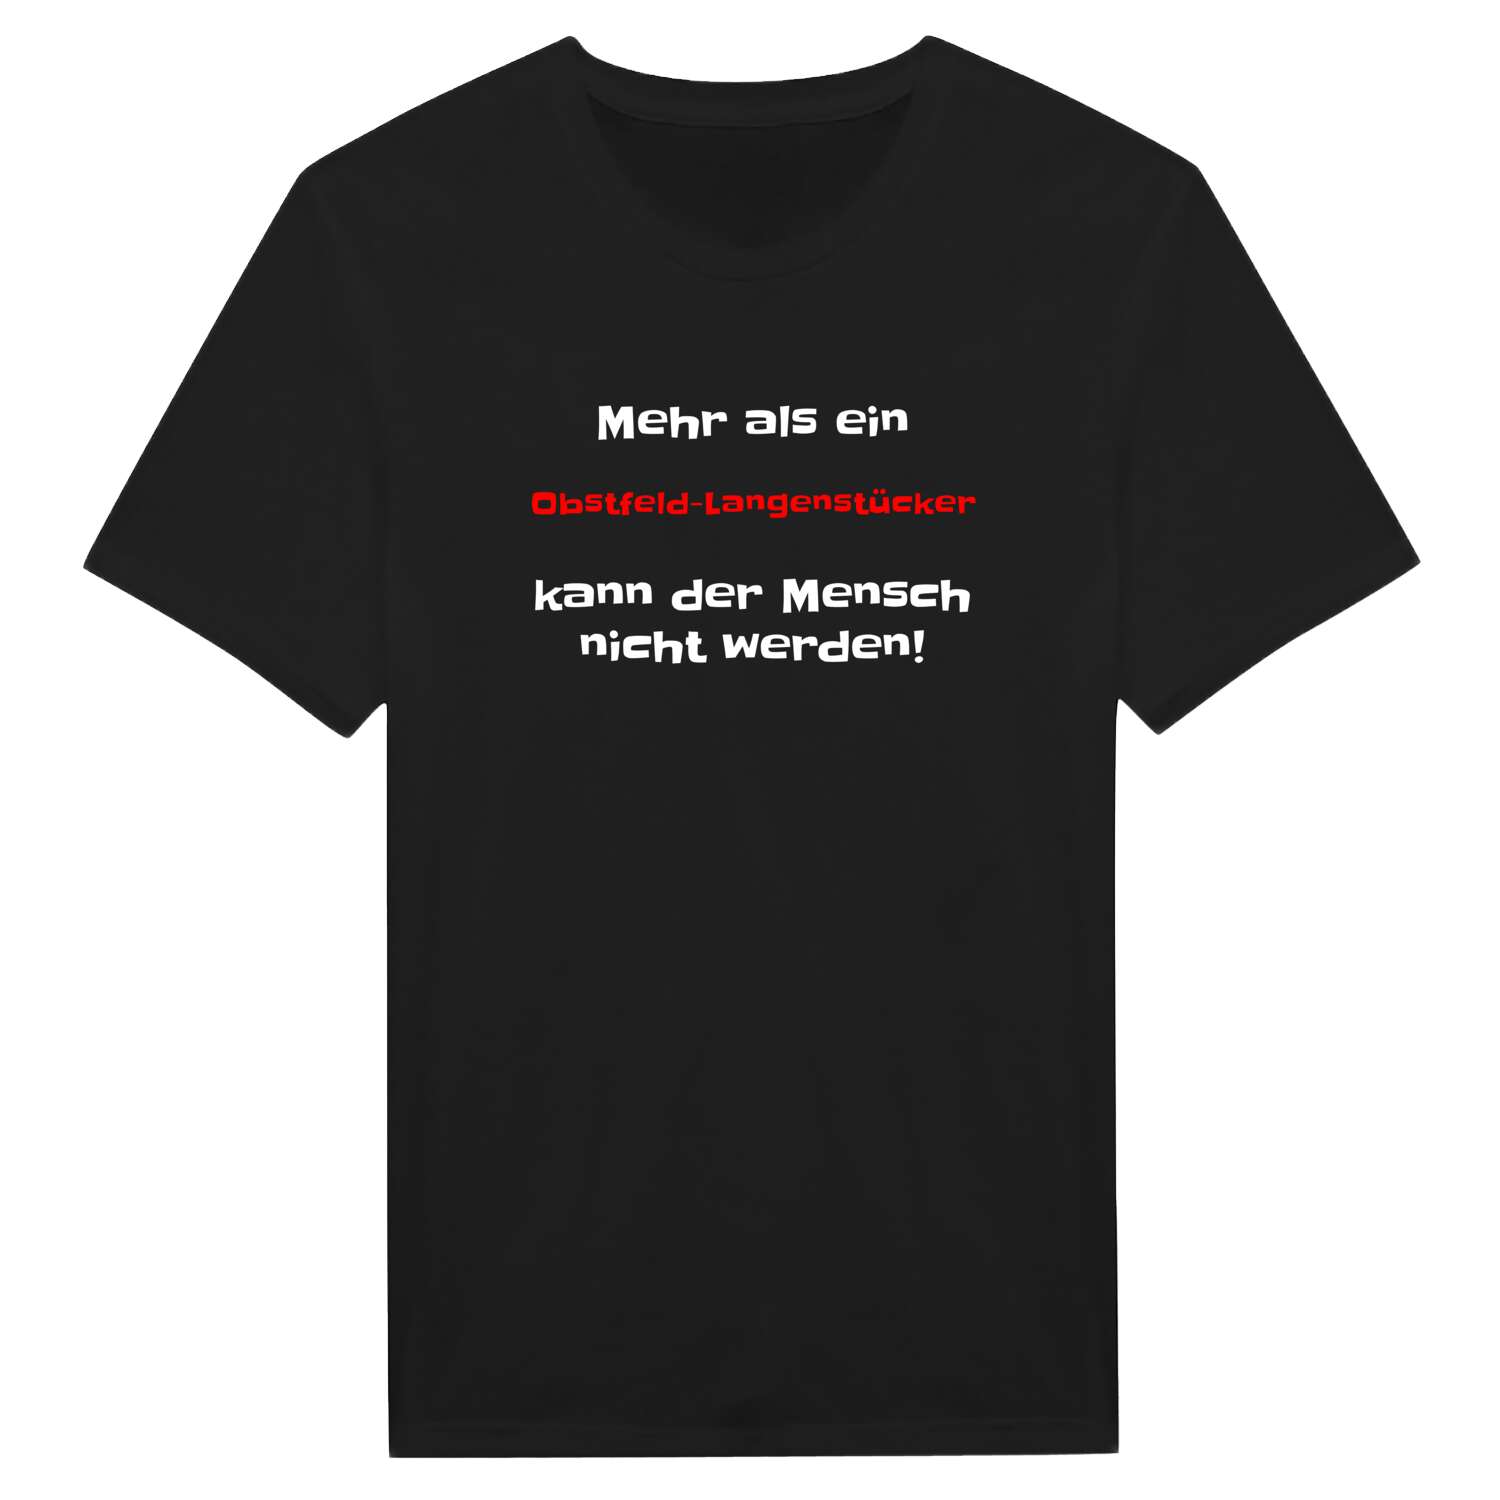 Obstfeld-Langenstück T-Shirt »Mehr als ein«